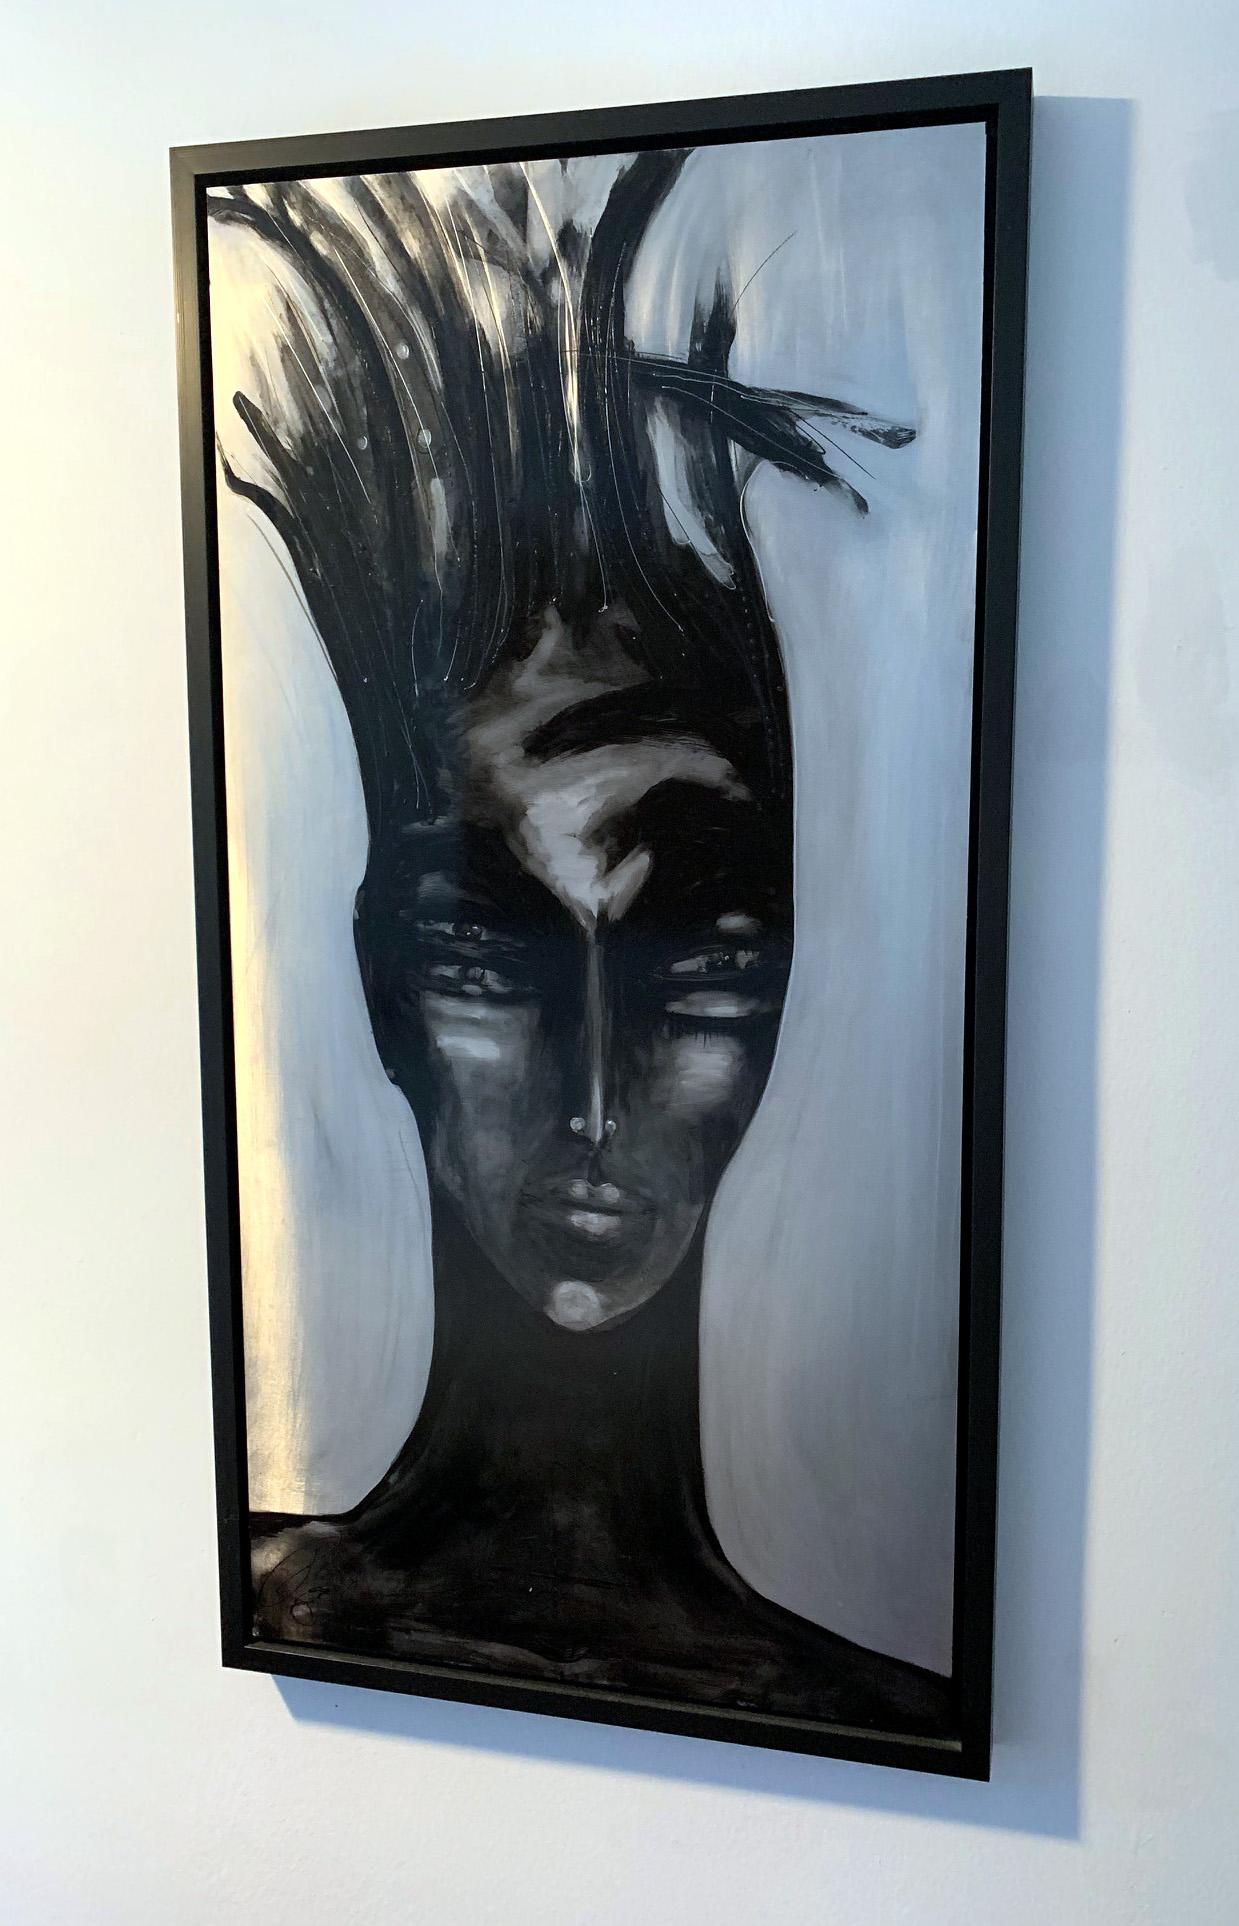 Médium : Peinture sur aluminium avec laque dans un cadre en bois
Titre : Centré sur la femme
Artiste : Marie-Josée Roy (Canadienne) 
Dimensions : 26,5